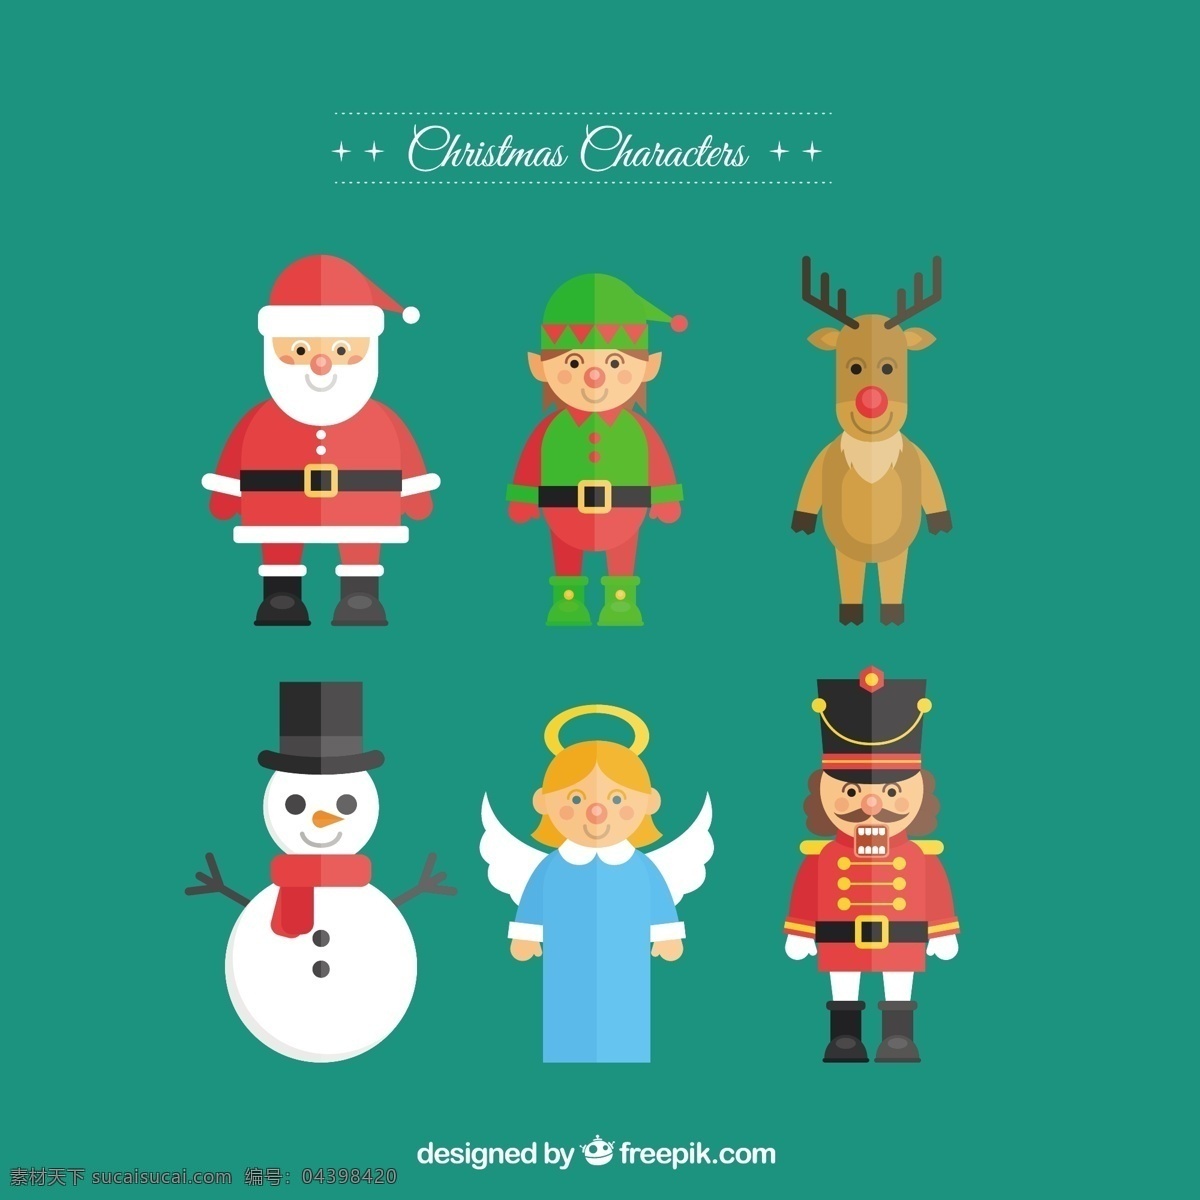 平面设计 中 圣诞 人物 圣诞节 新的一年 新年快乐 圣诞快乐 冬天快乐 圣诞老人 天使 克劳斯 平 性格 庆典 新的节日 堆雪人 驯鹿 一年 青色 天蓝色